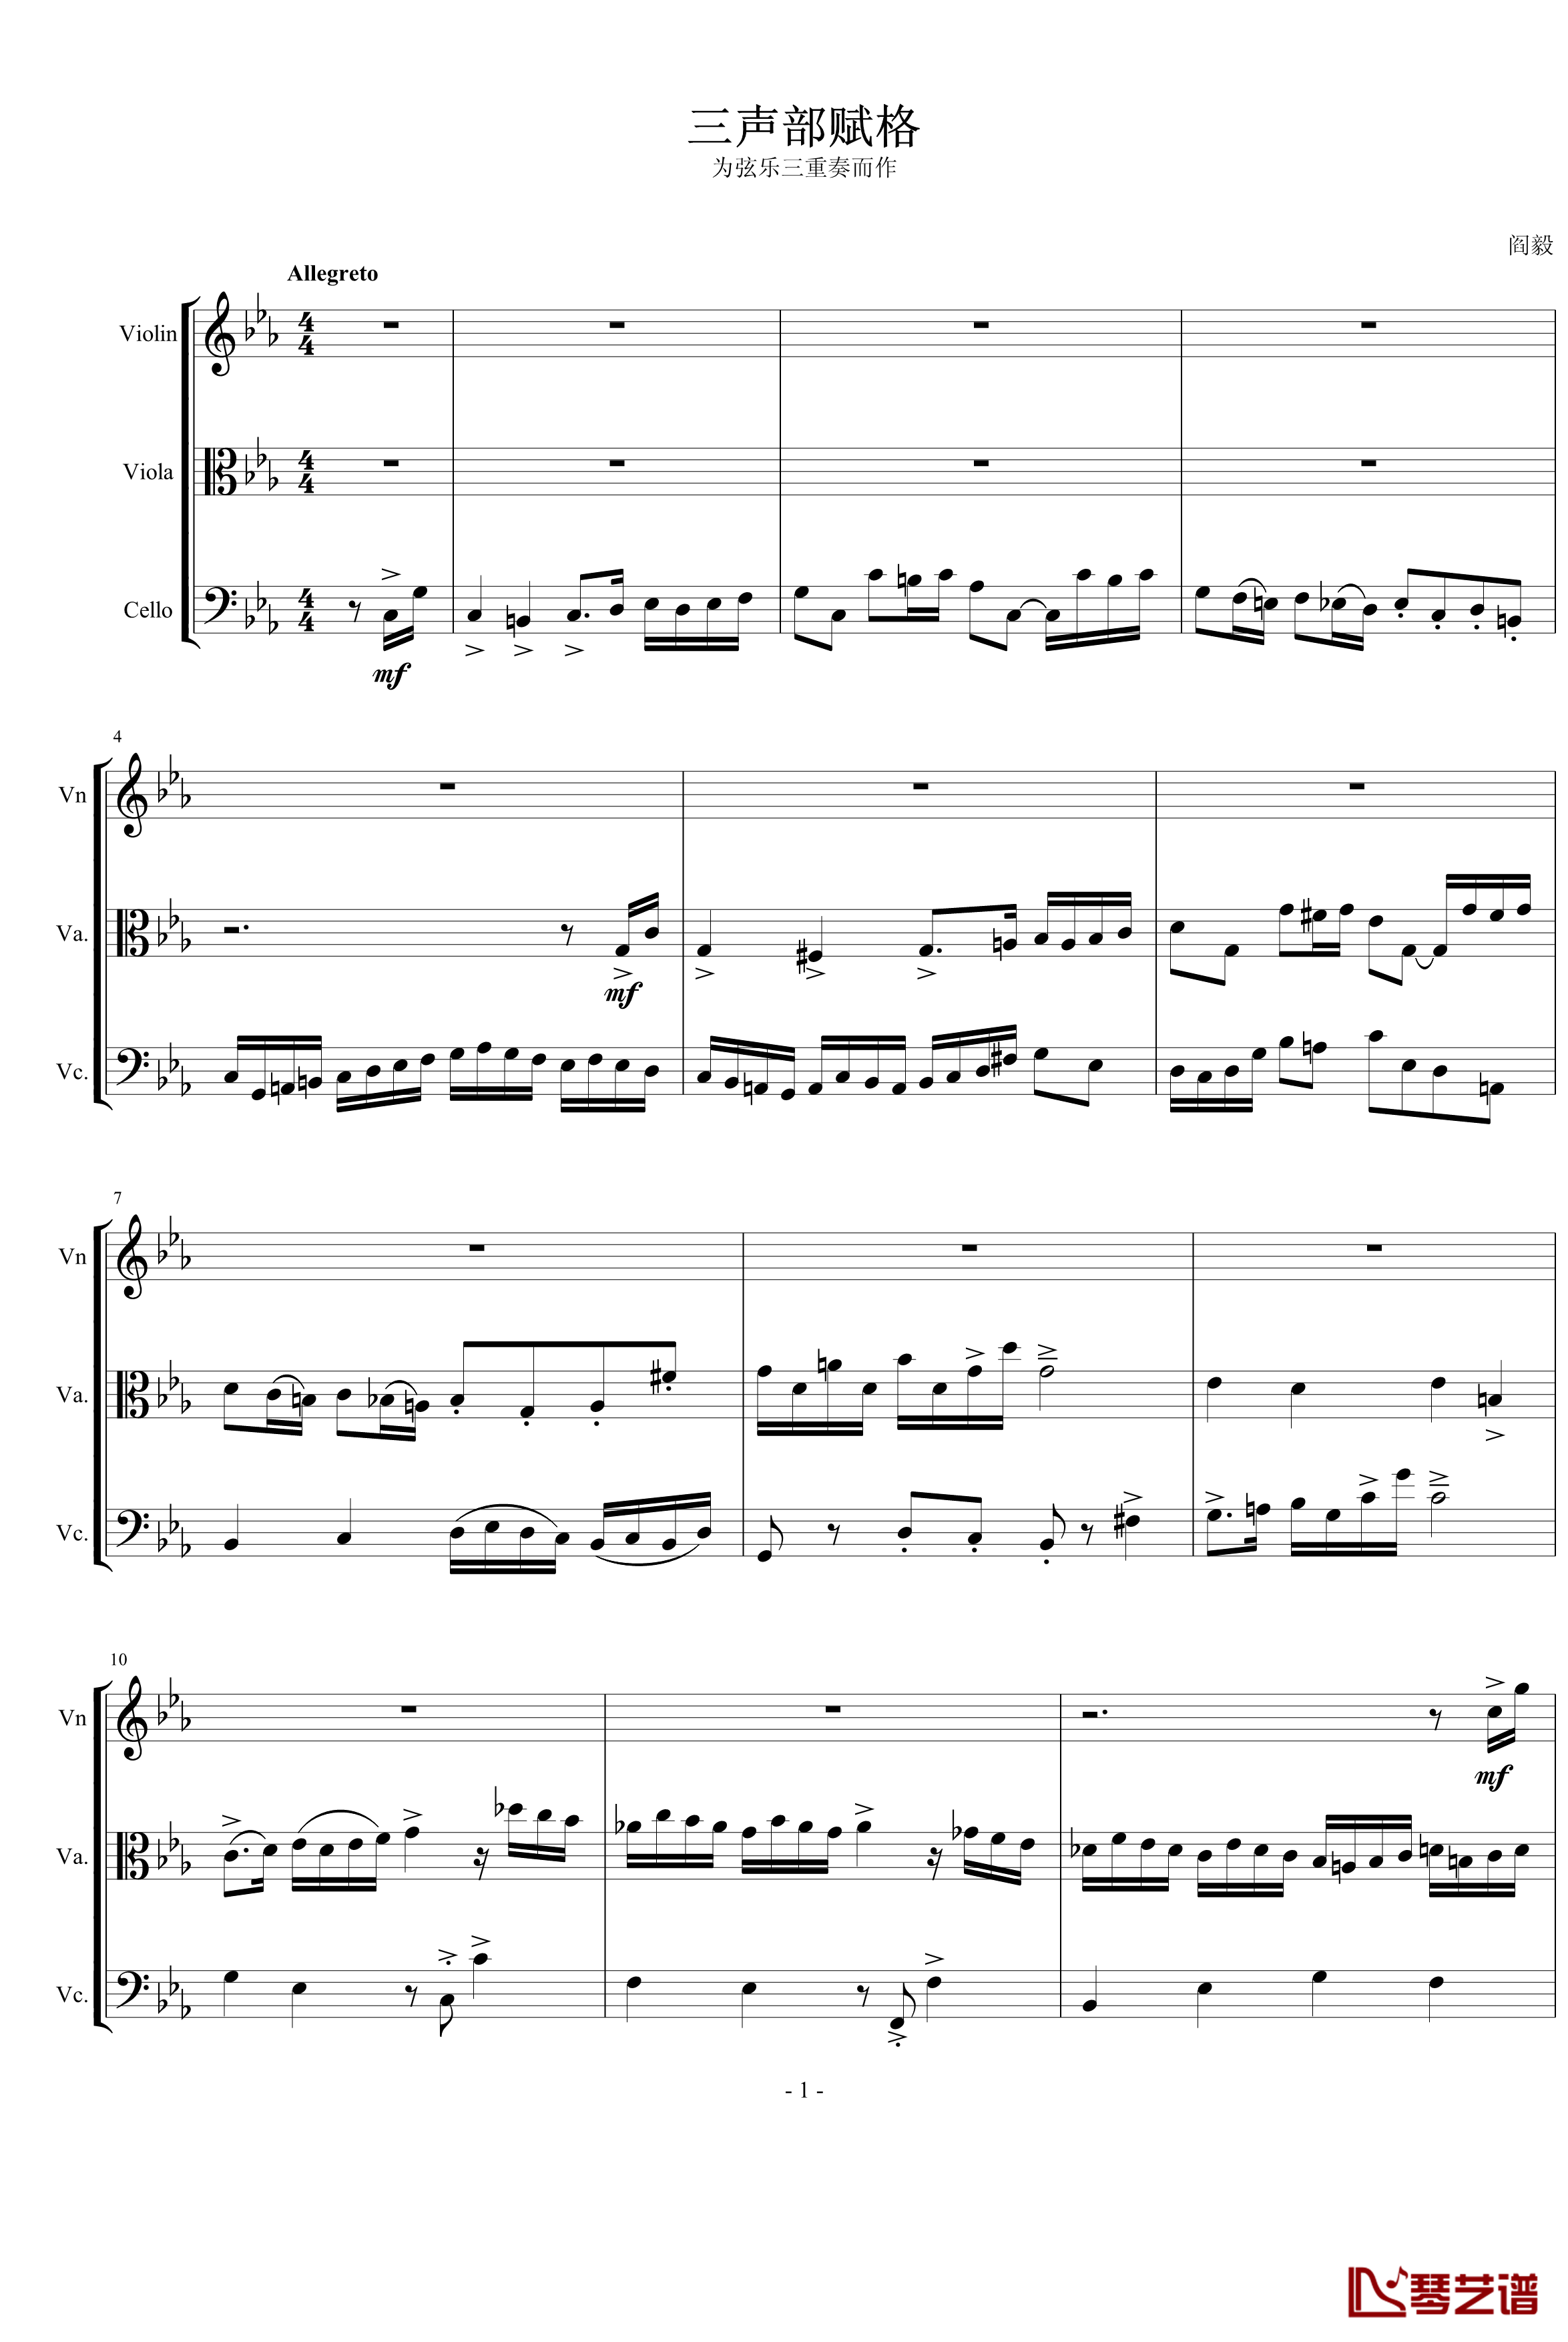 三声部赋格钢琴谱-为弦乐三重奏而作-琴辉1